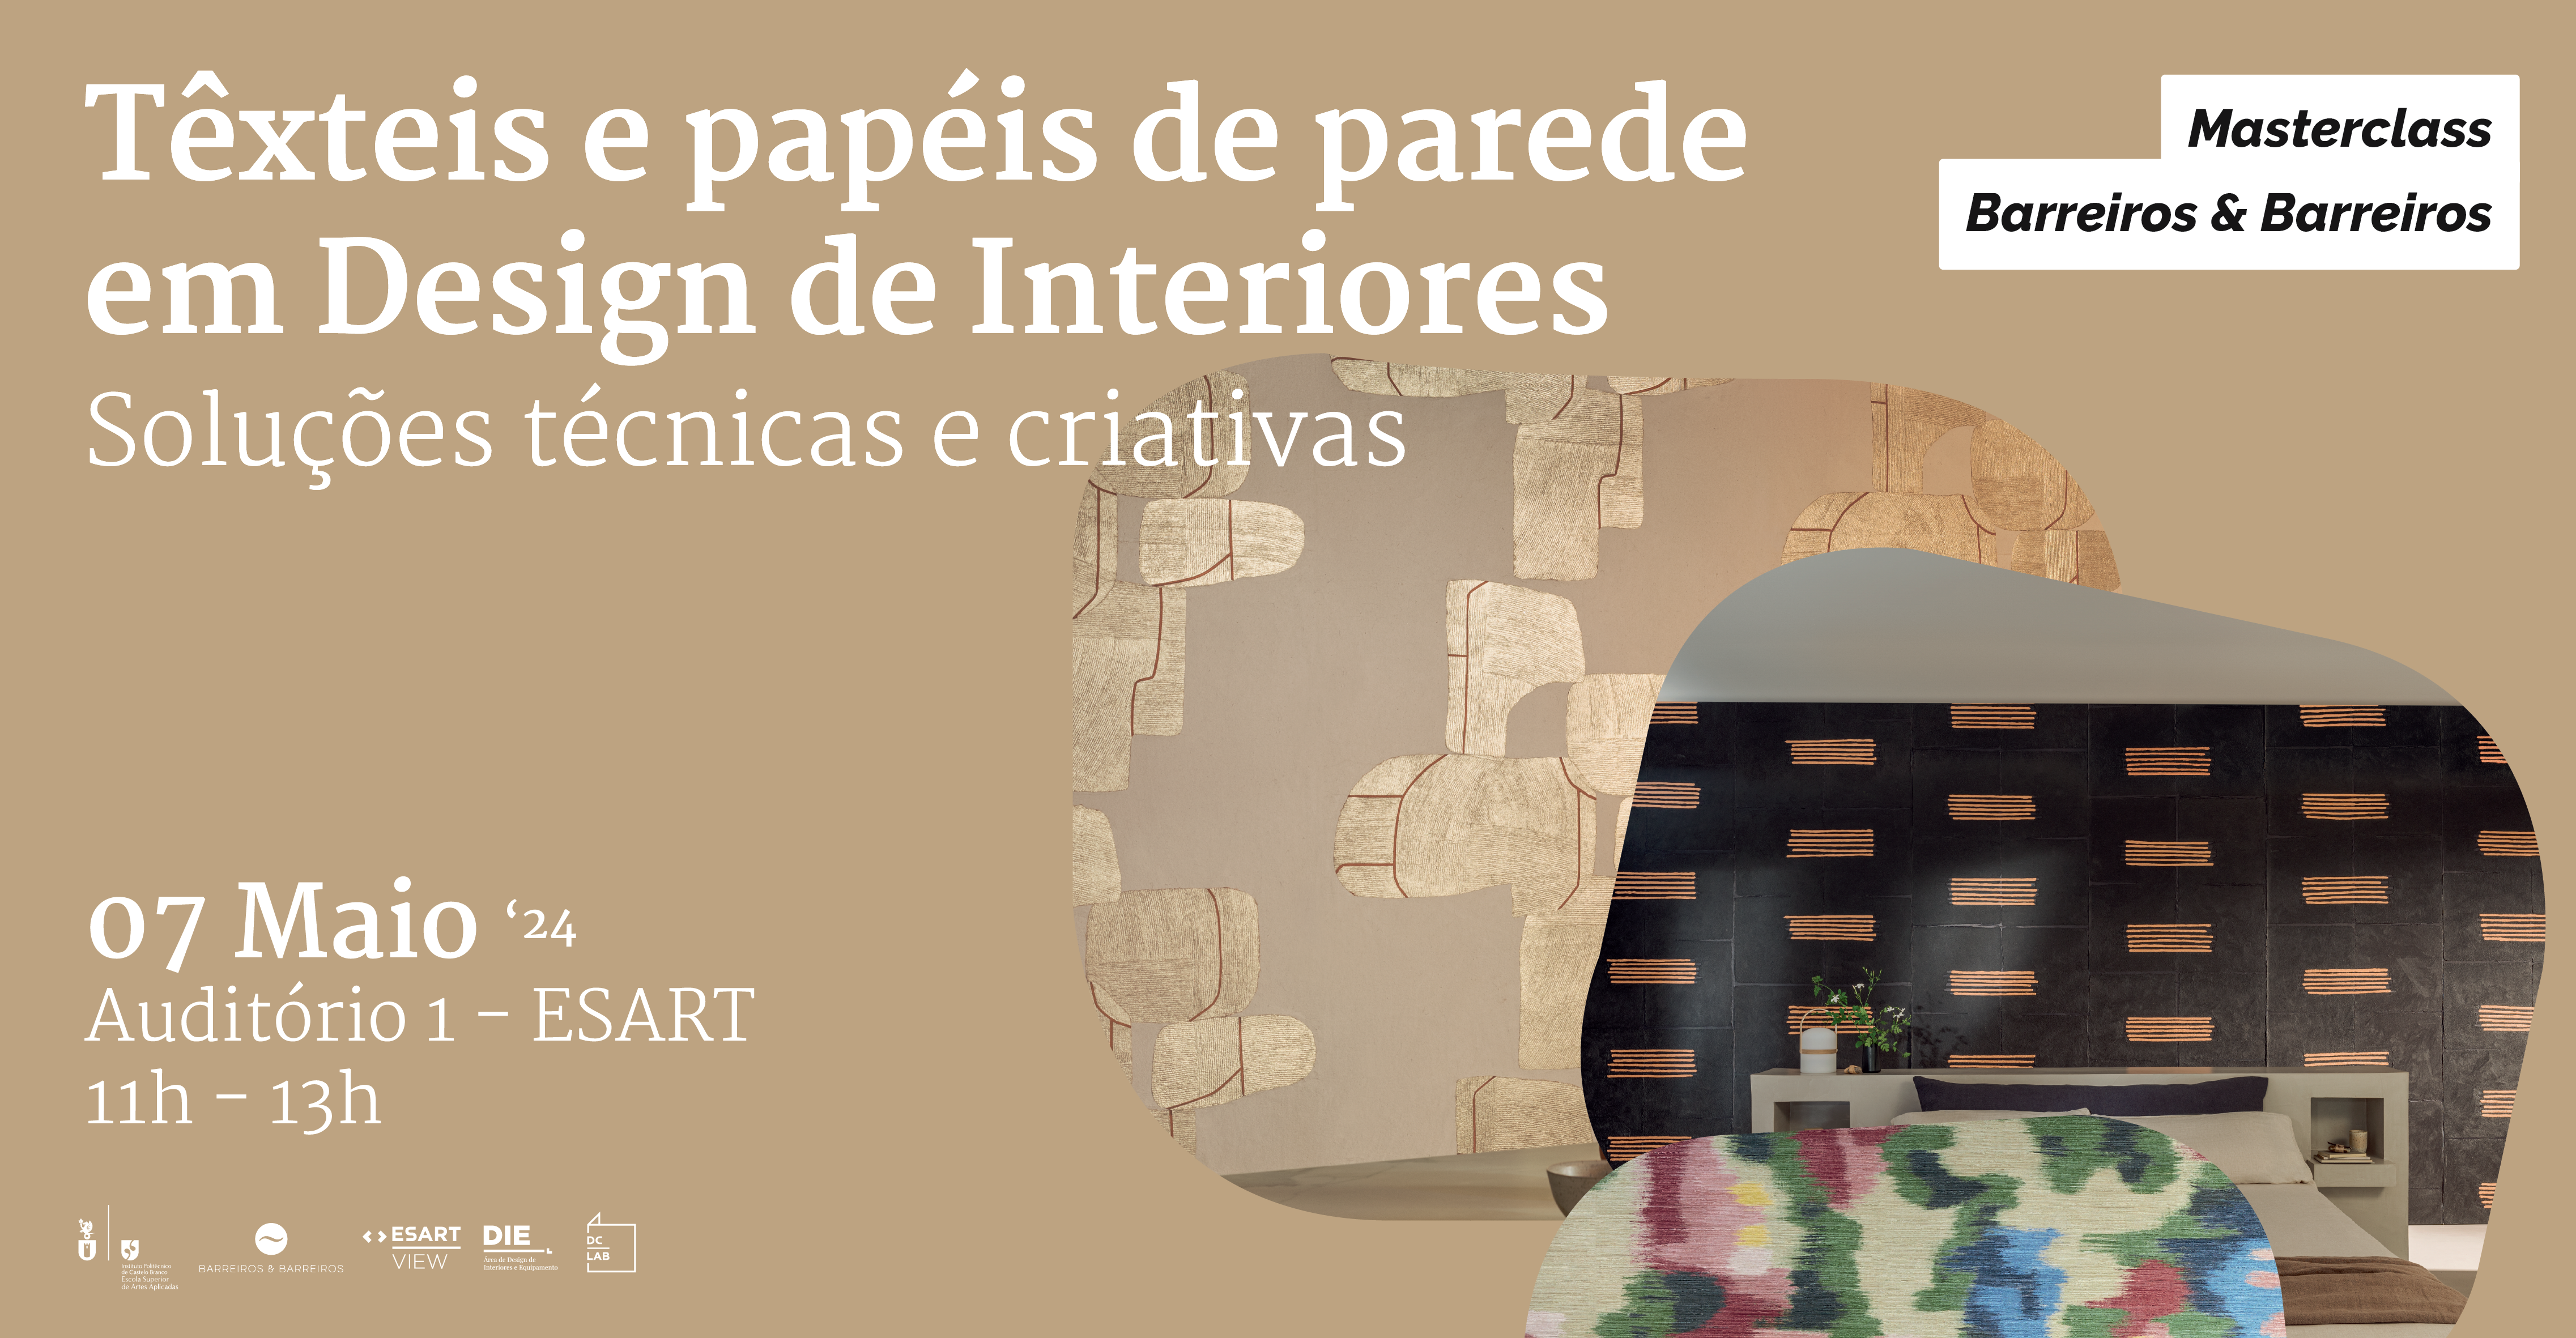 Têxteis e papéis de parede em Design de Interiores